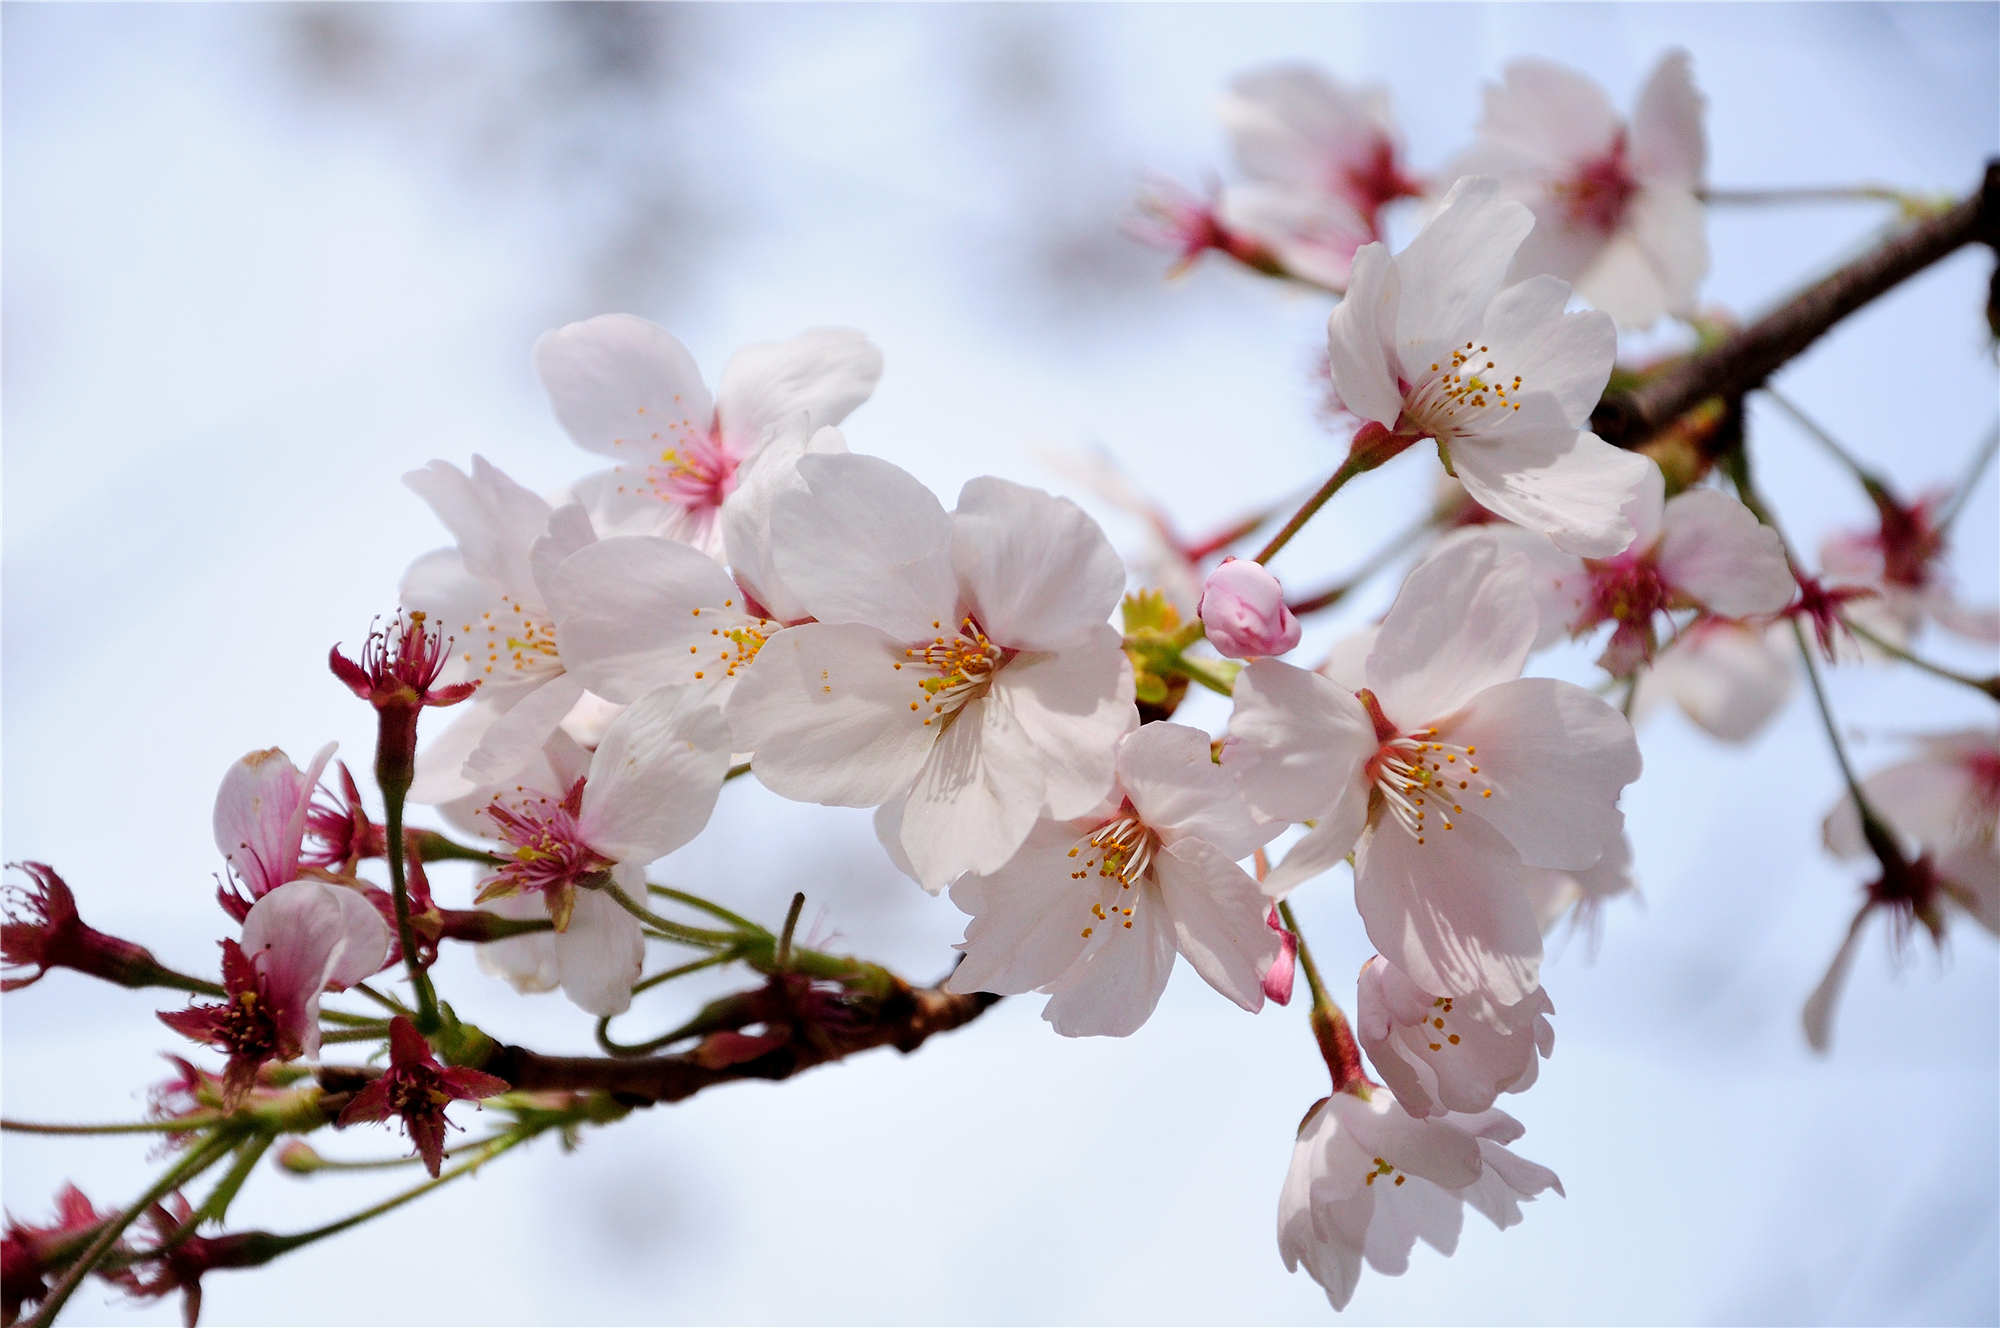 六张美丽的樱花图:粉色樱花,别具魅力,十分烂漫